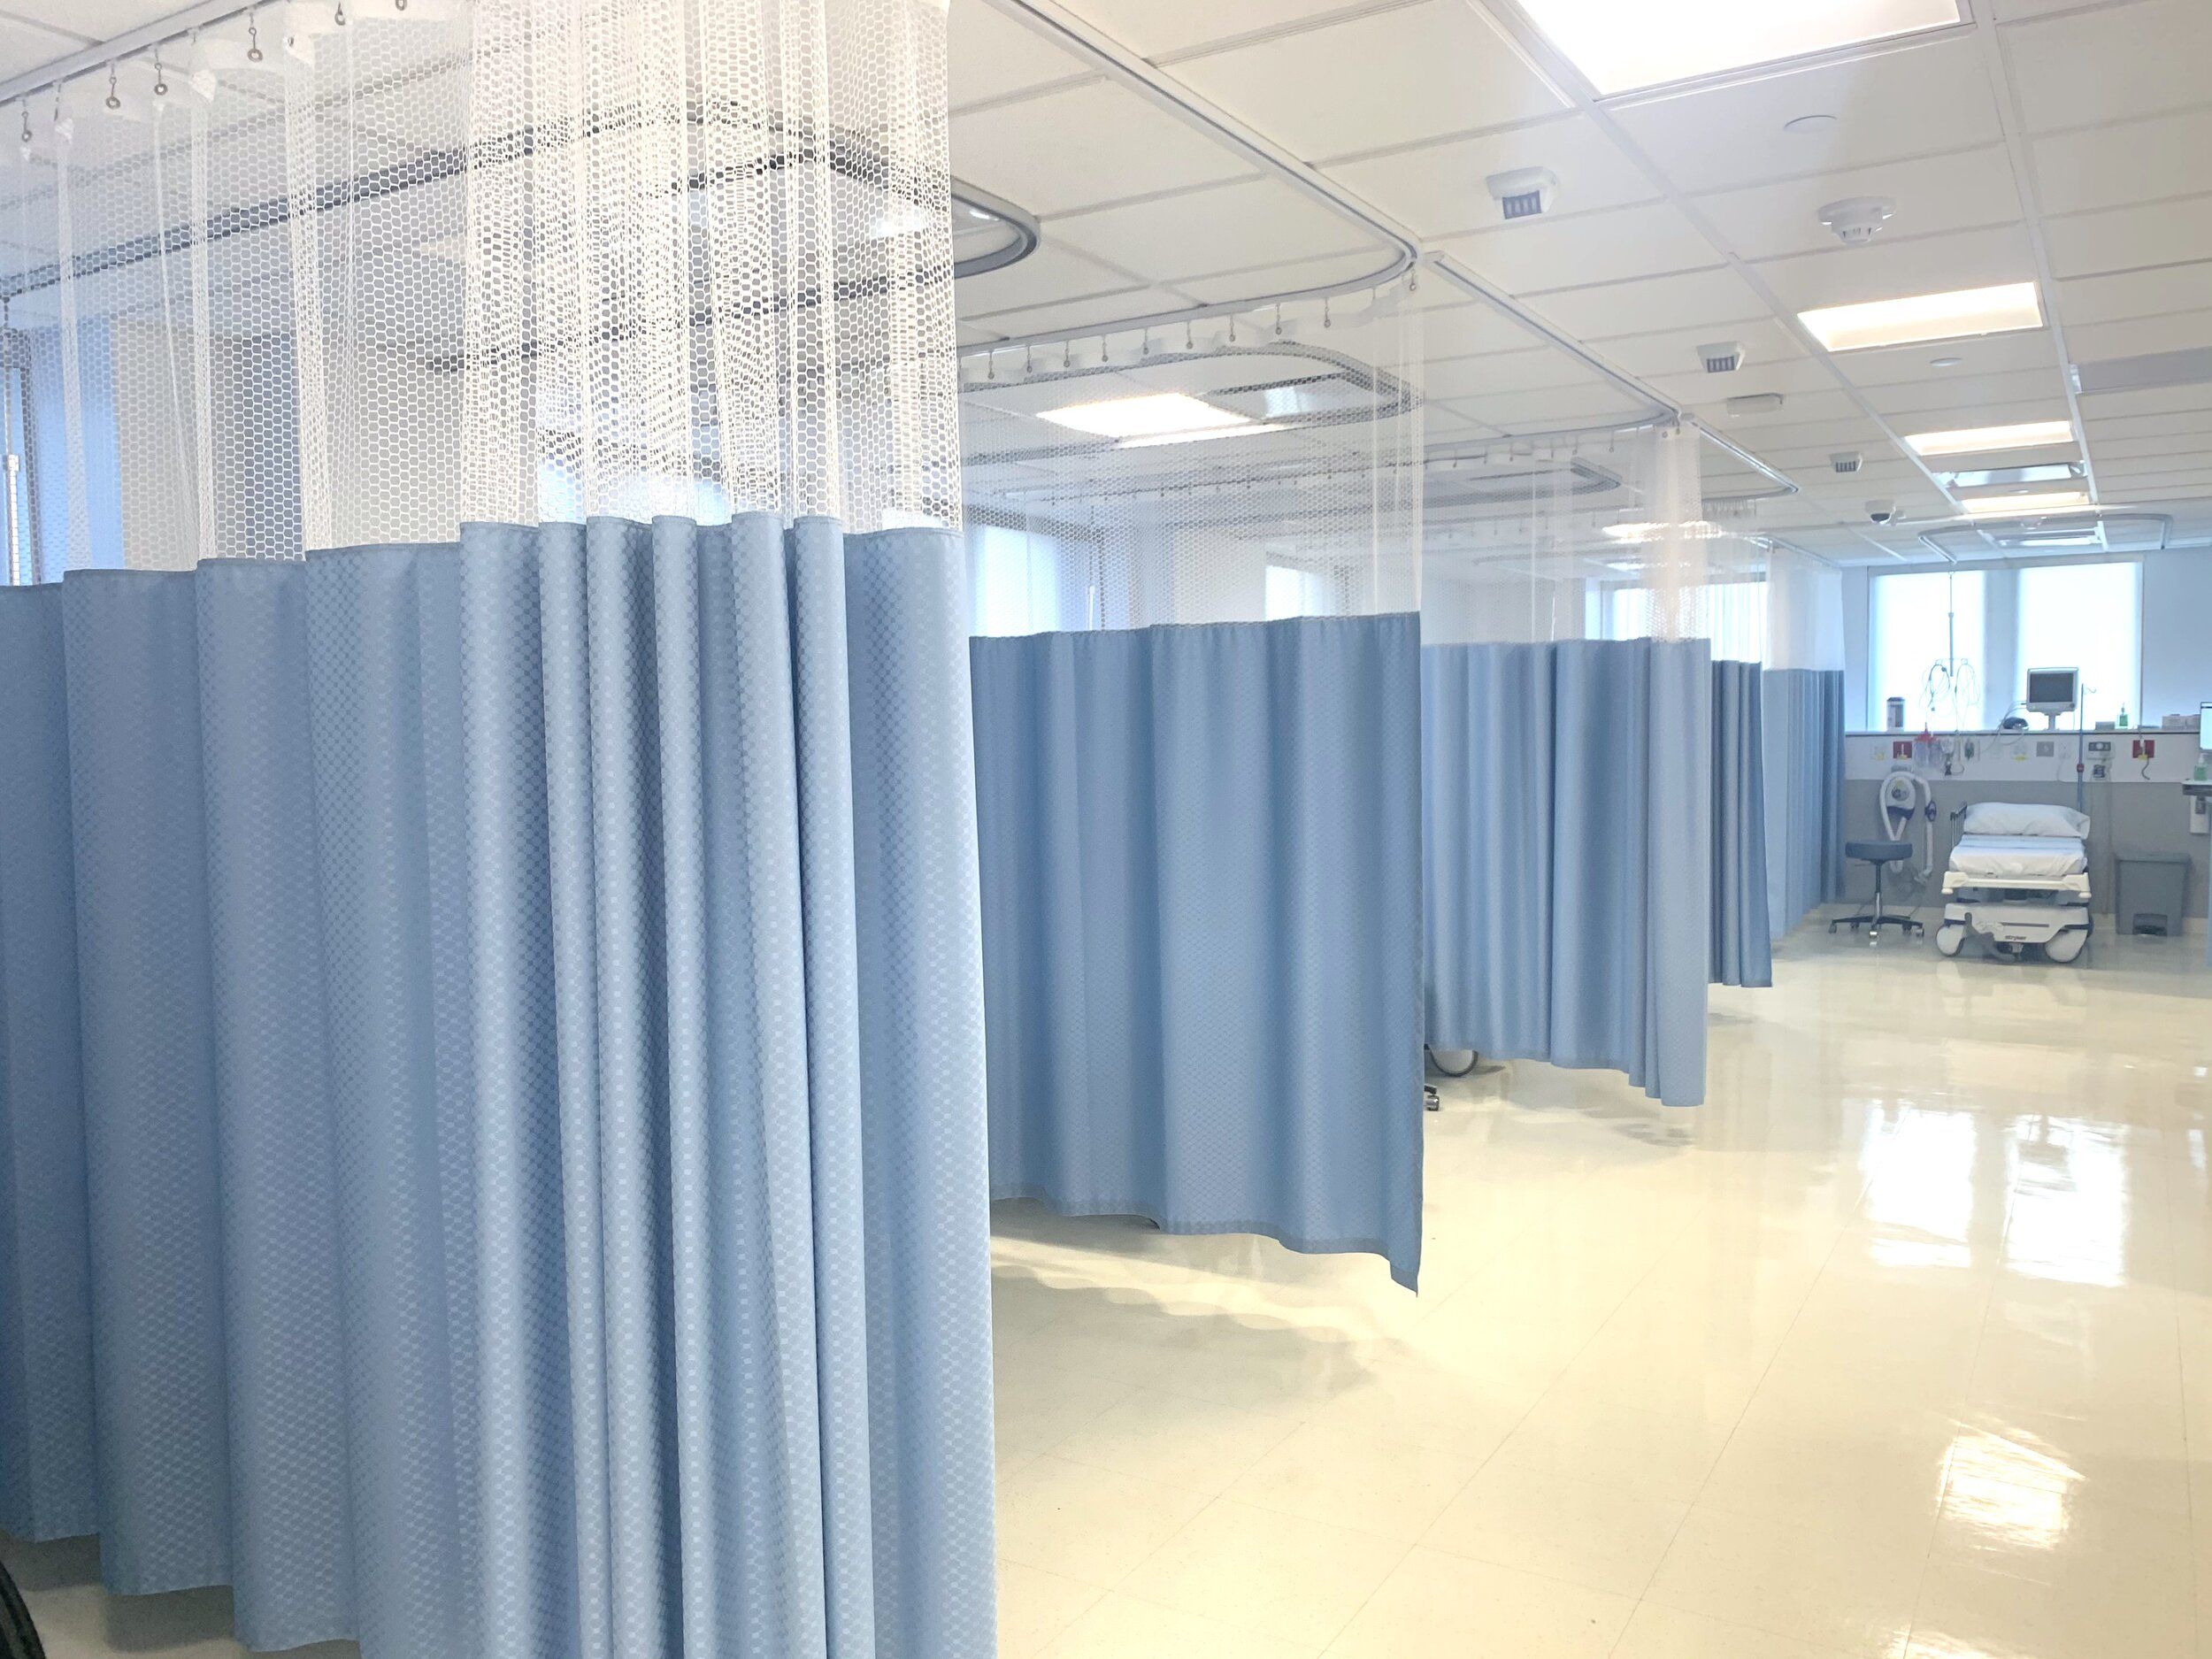 hospital-curtain